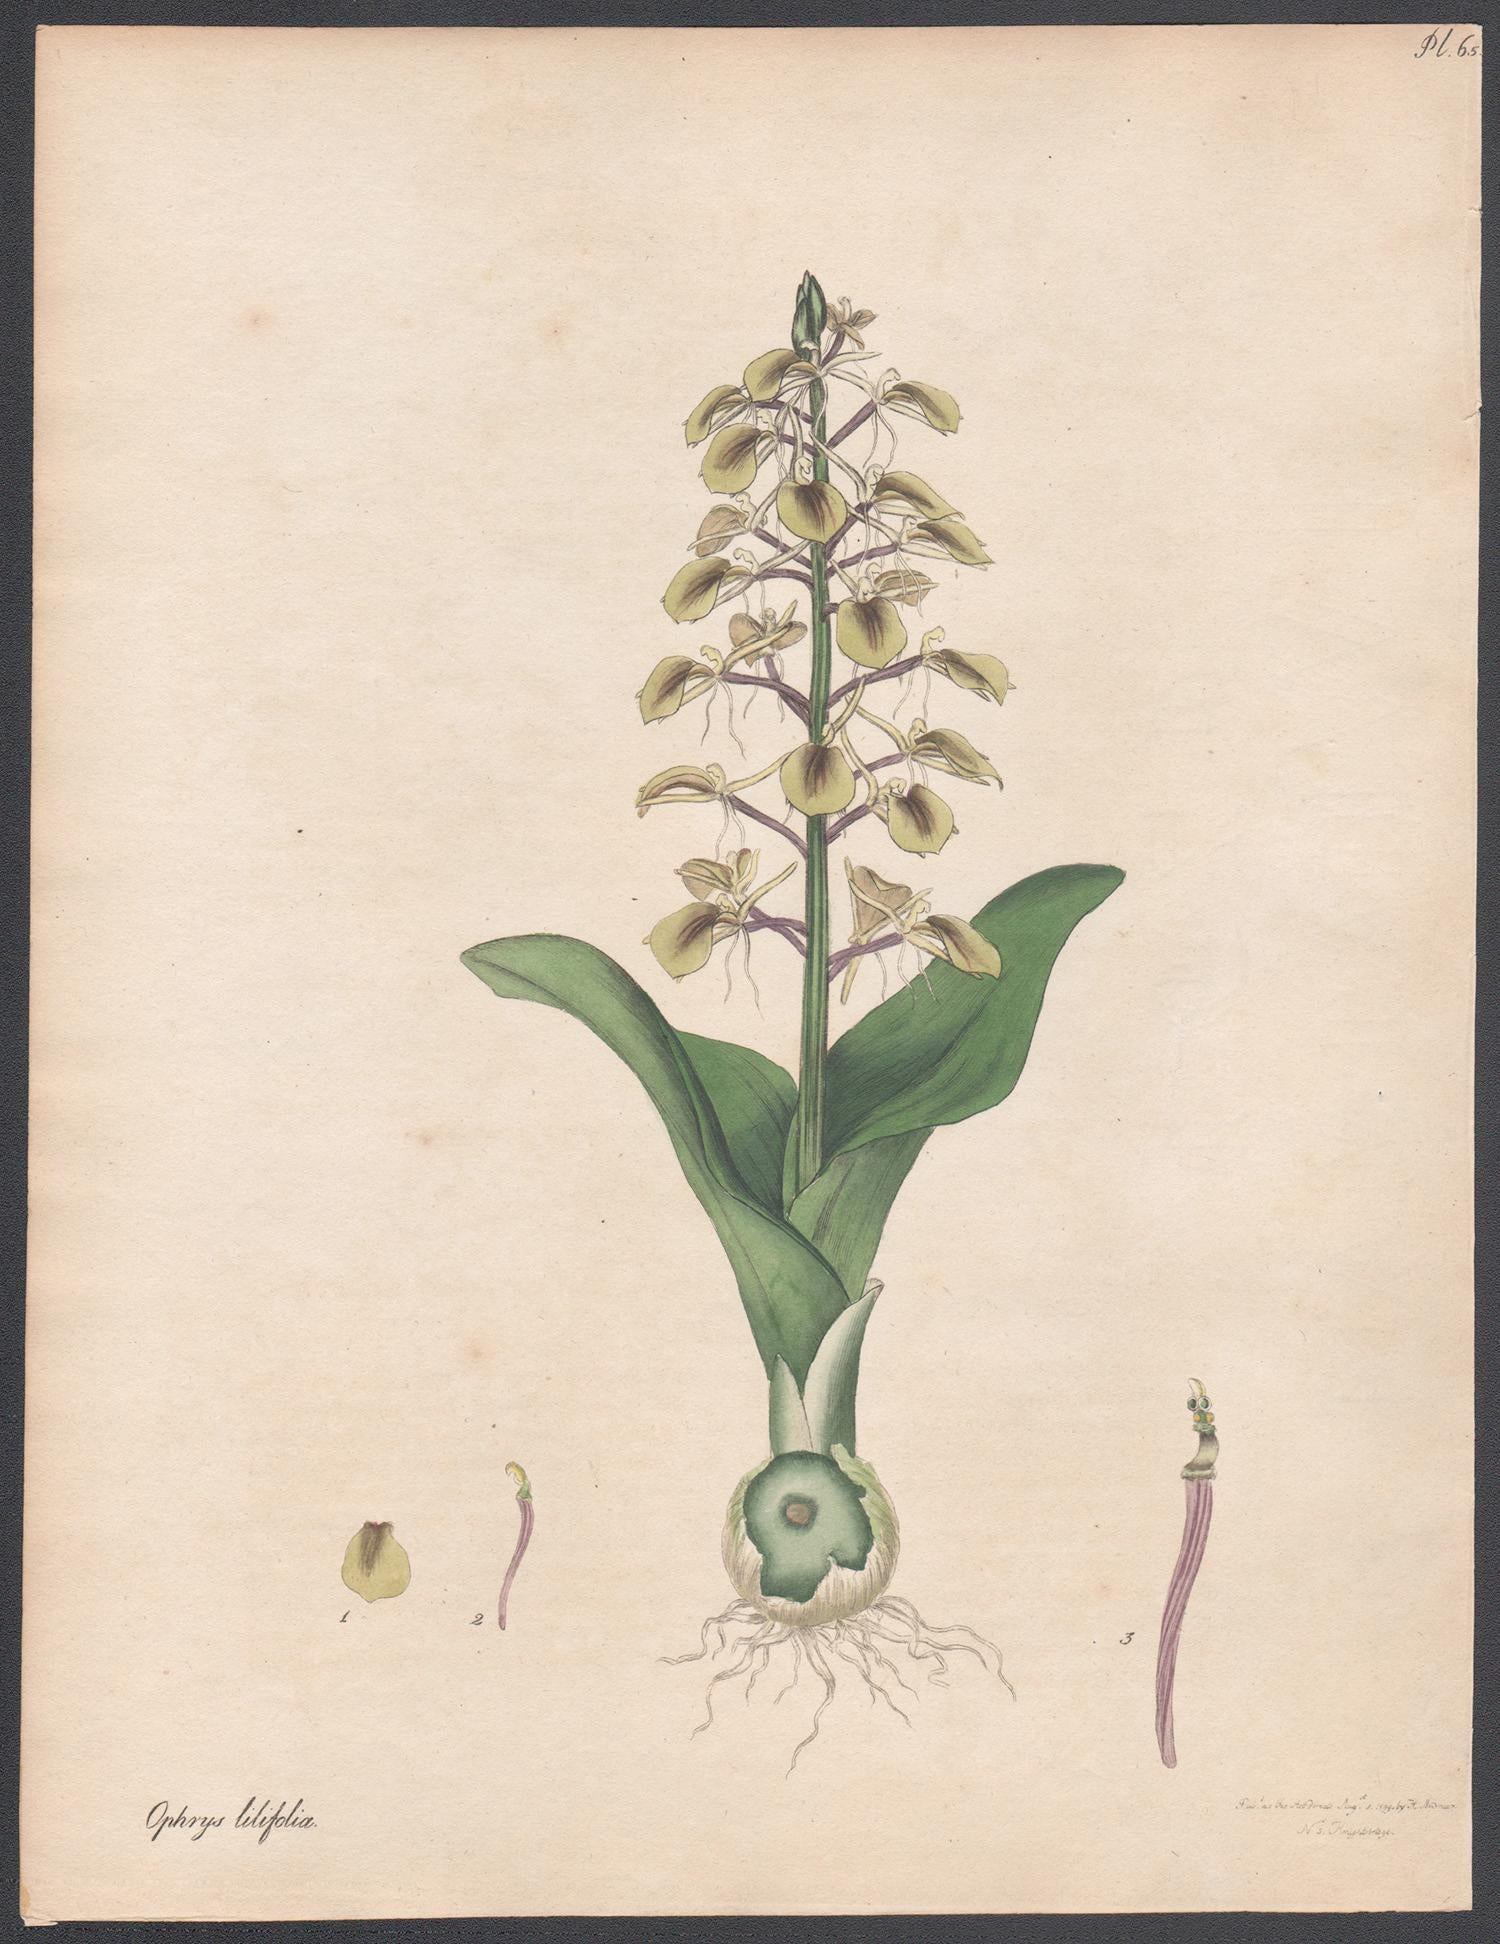 Ophrys à feuilles de lys. Henry Andrews gravure de fleurs botaniques ancienne gravure à l'ancienne